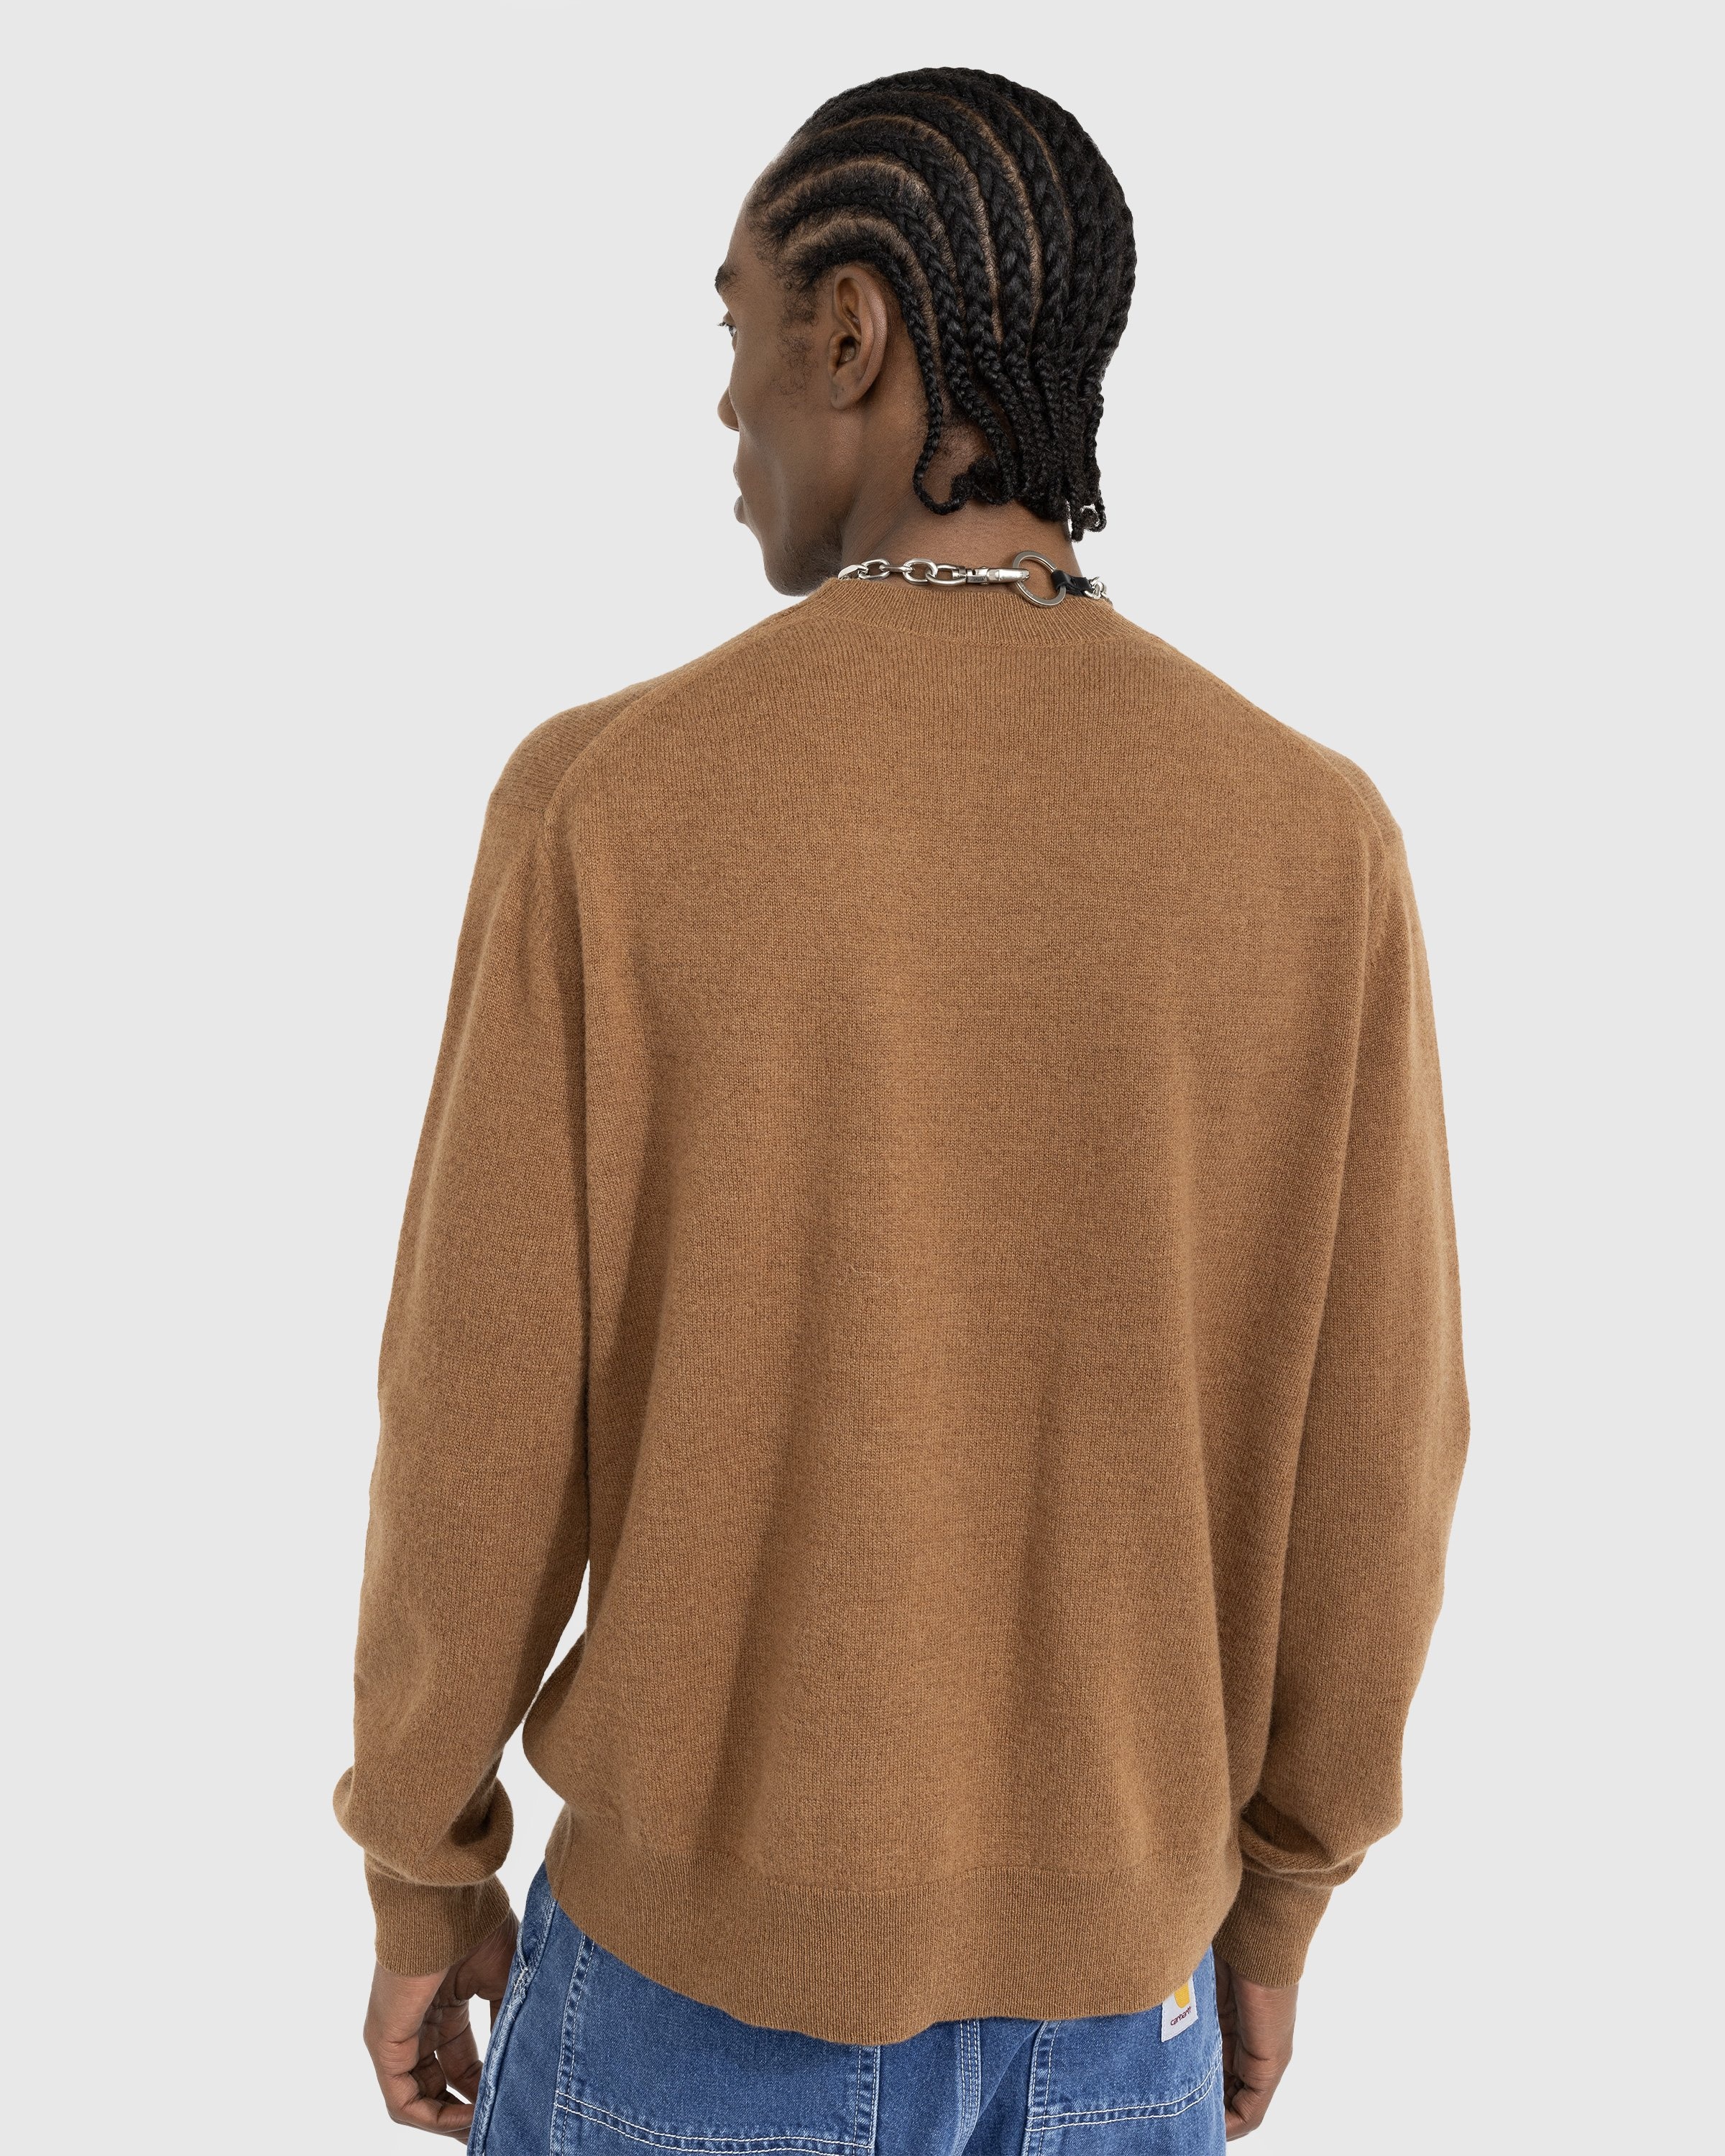 Acne Studios – Wool Crewneck Sweater Toffee Brown - Knitwear - Brown - Image 3